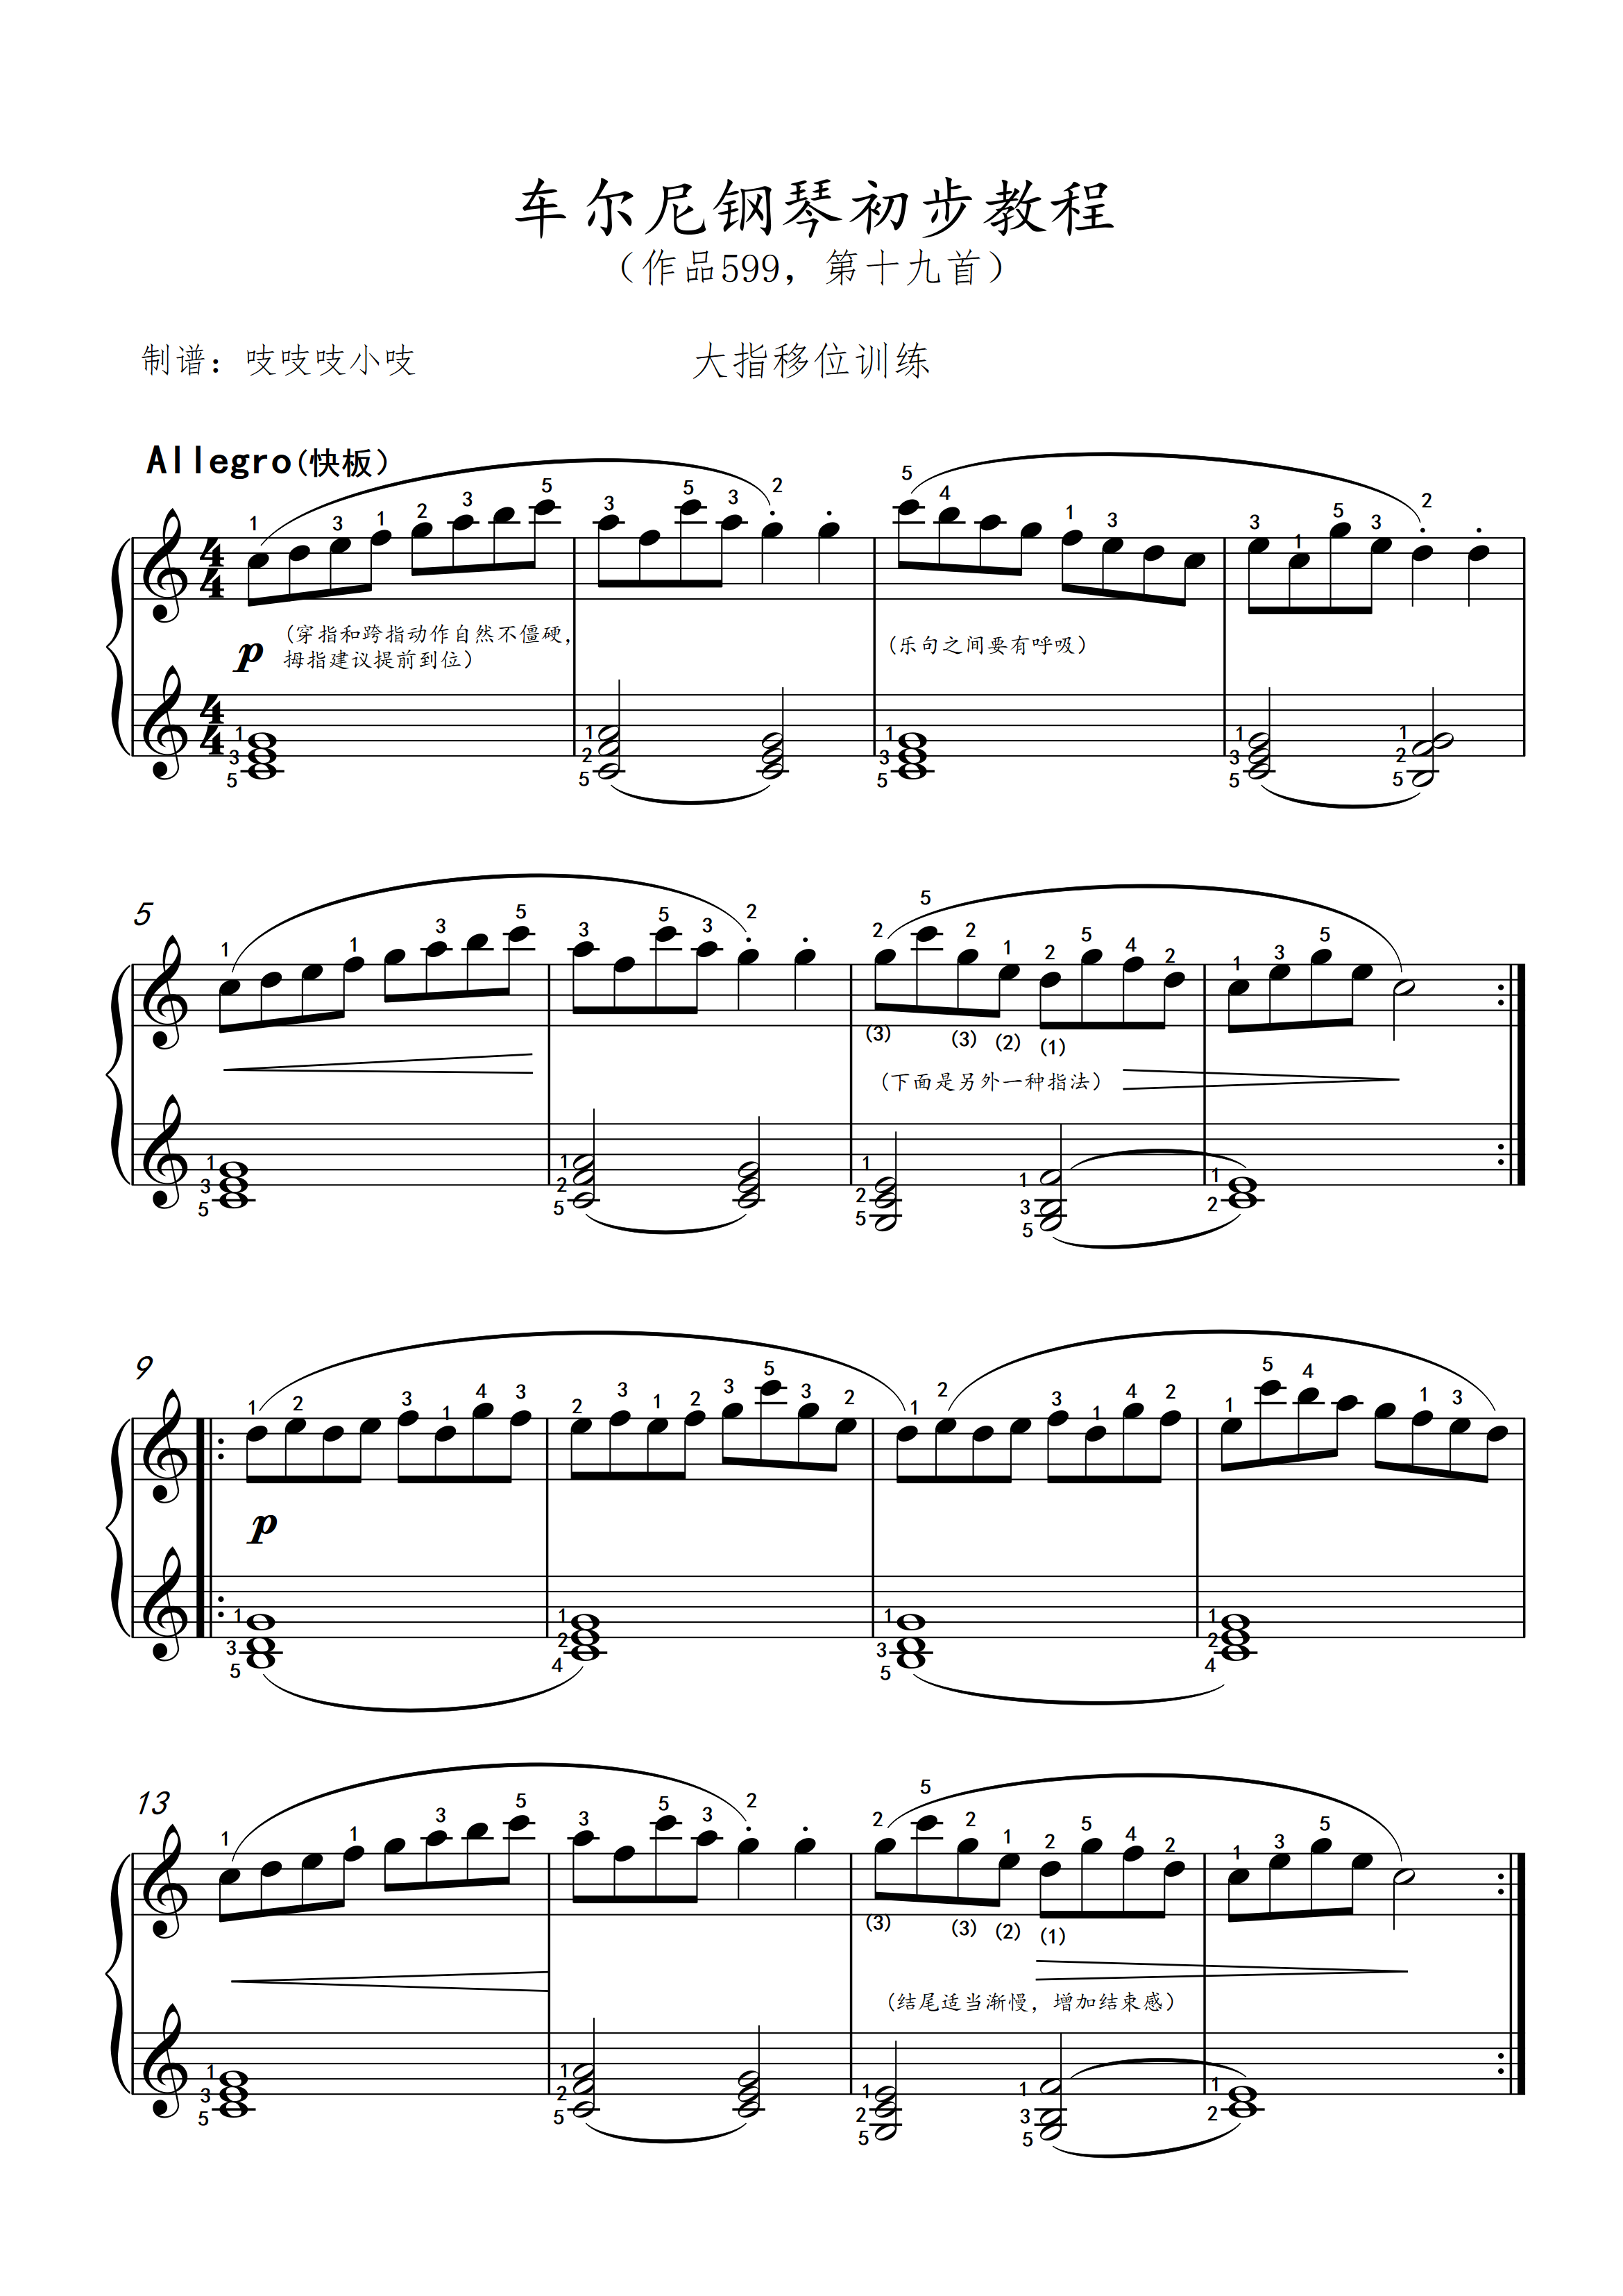 车尔尼钢琴初步教程 第19(作品599,第十九首)钢琴谱